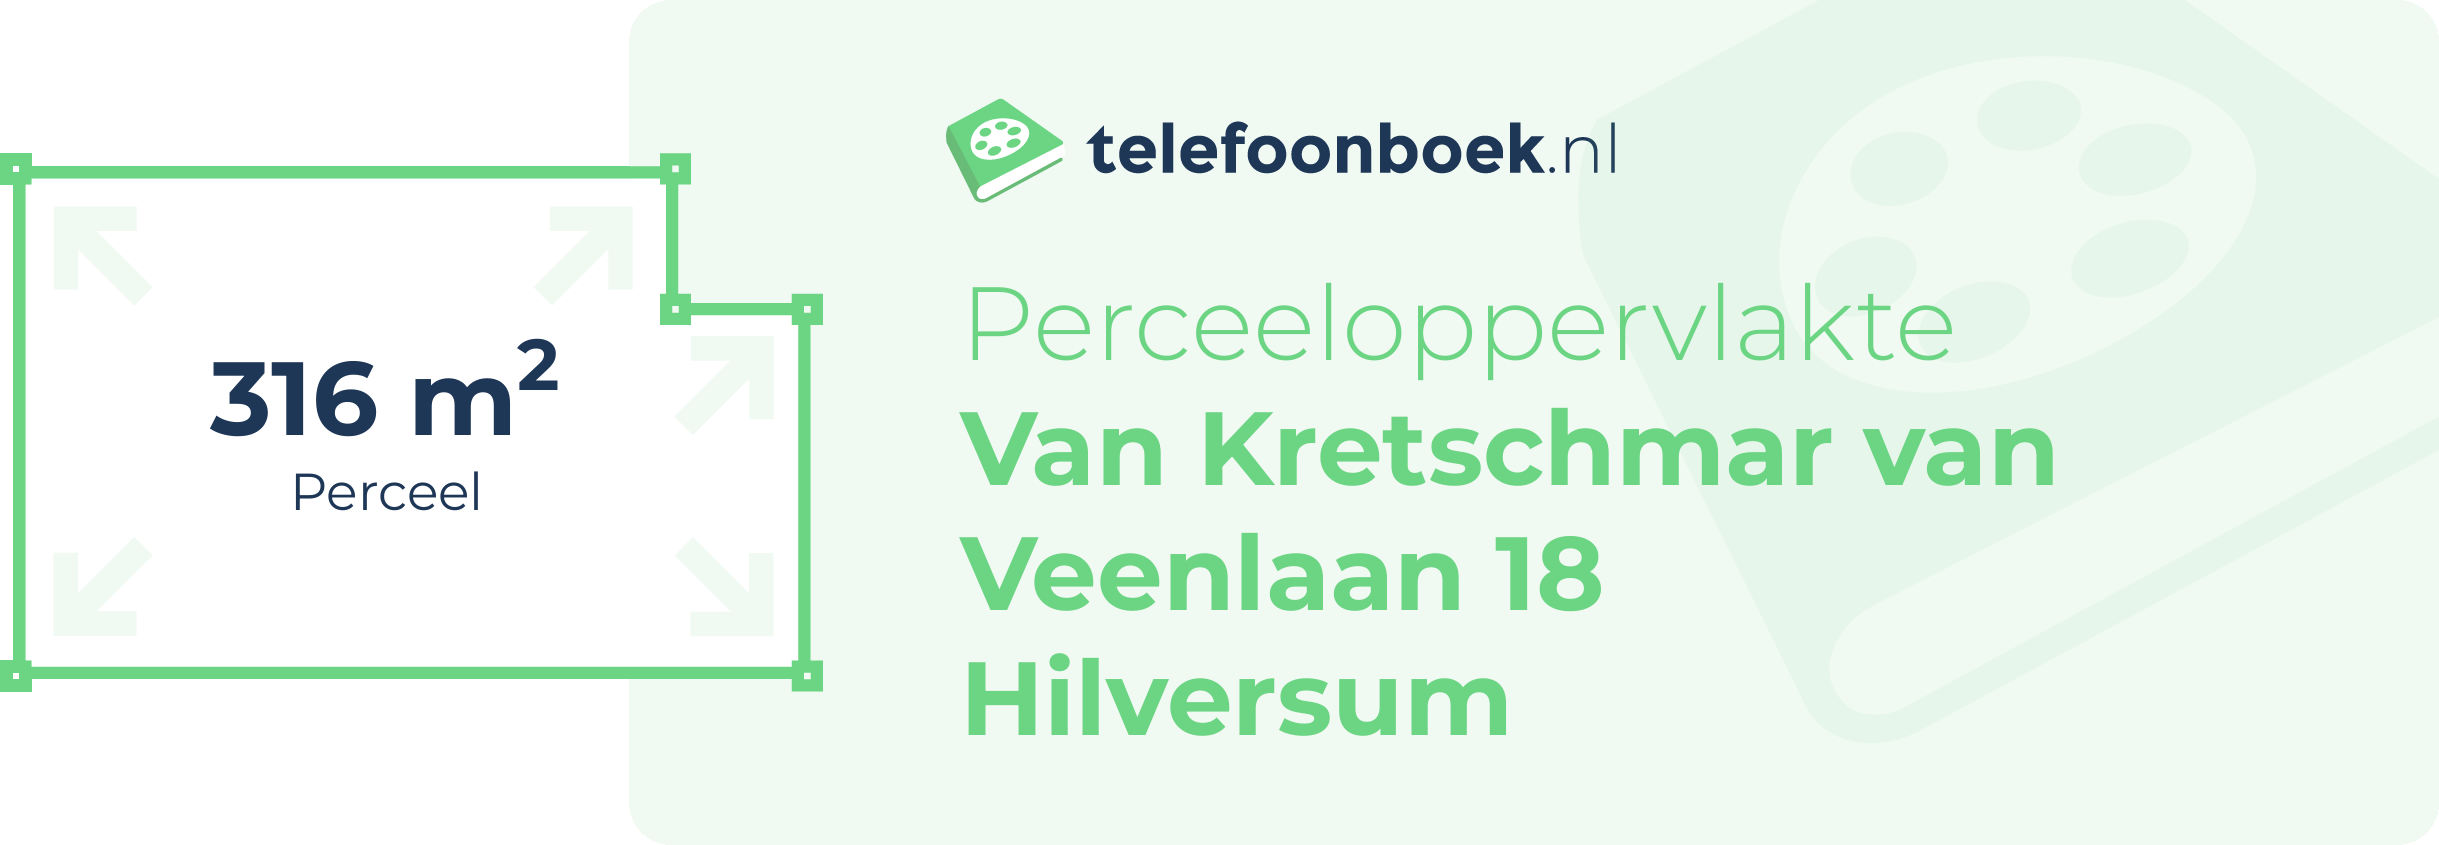 Perceeloppervlakte Van Kretschmar Van Veenlaan 18 Hilversum